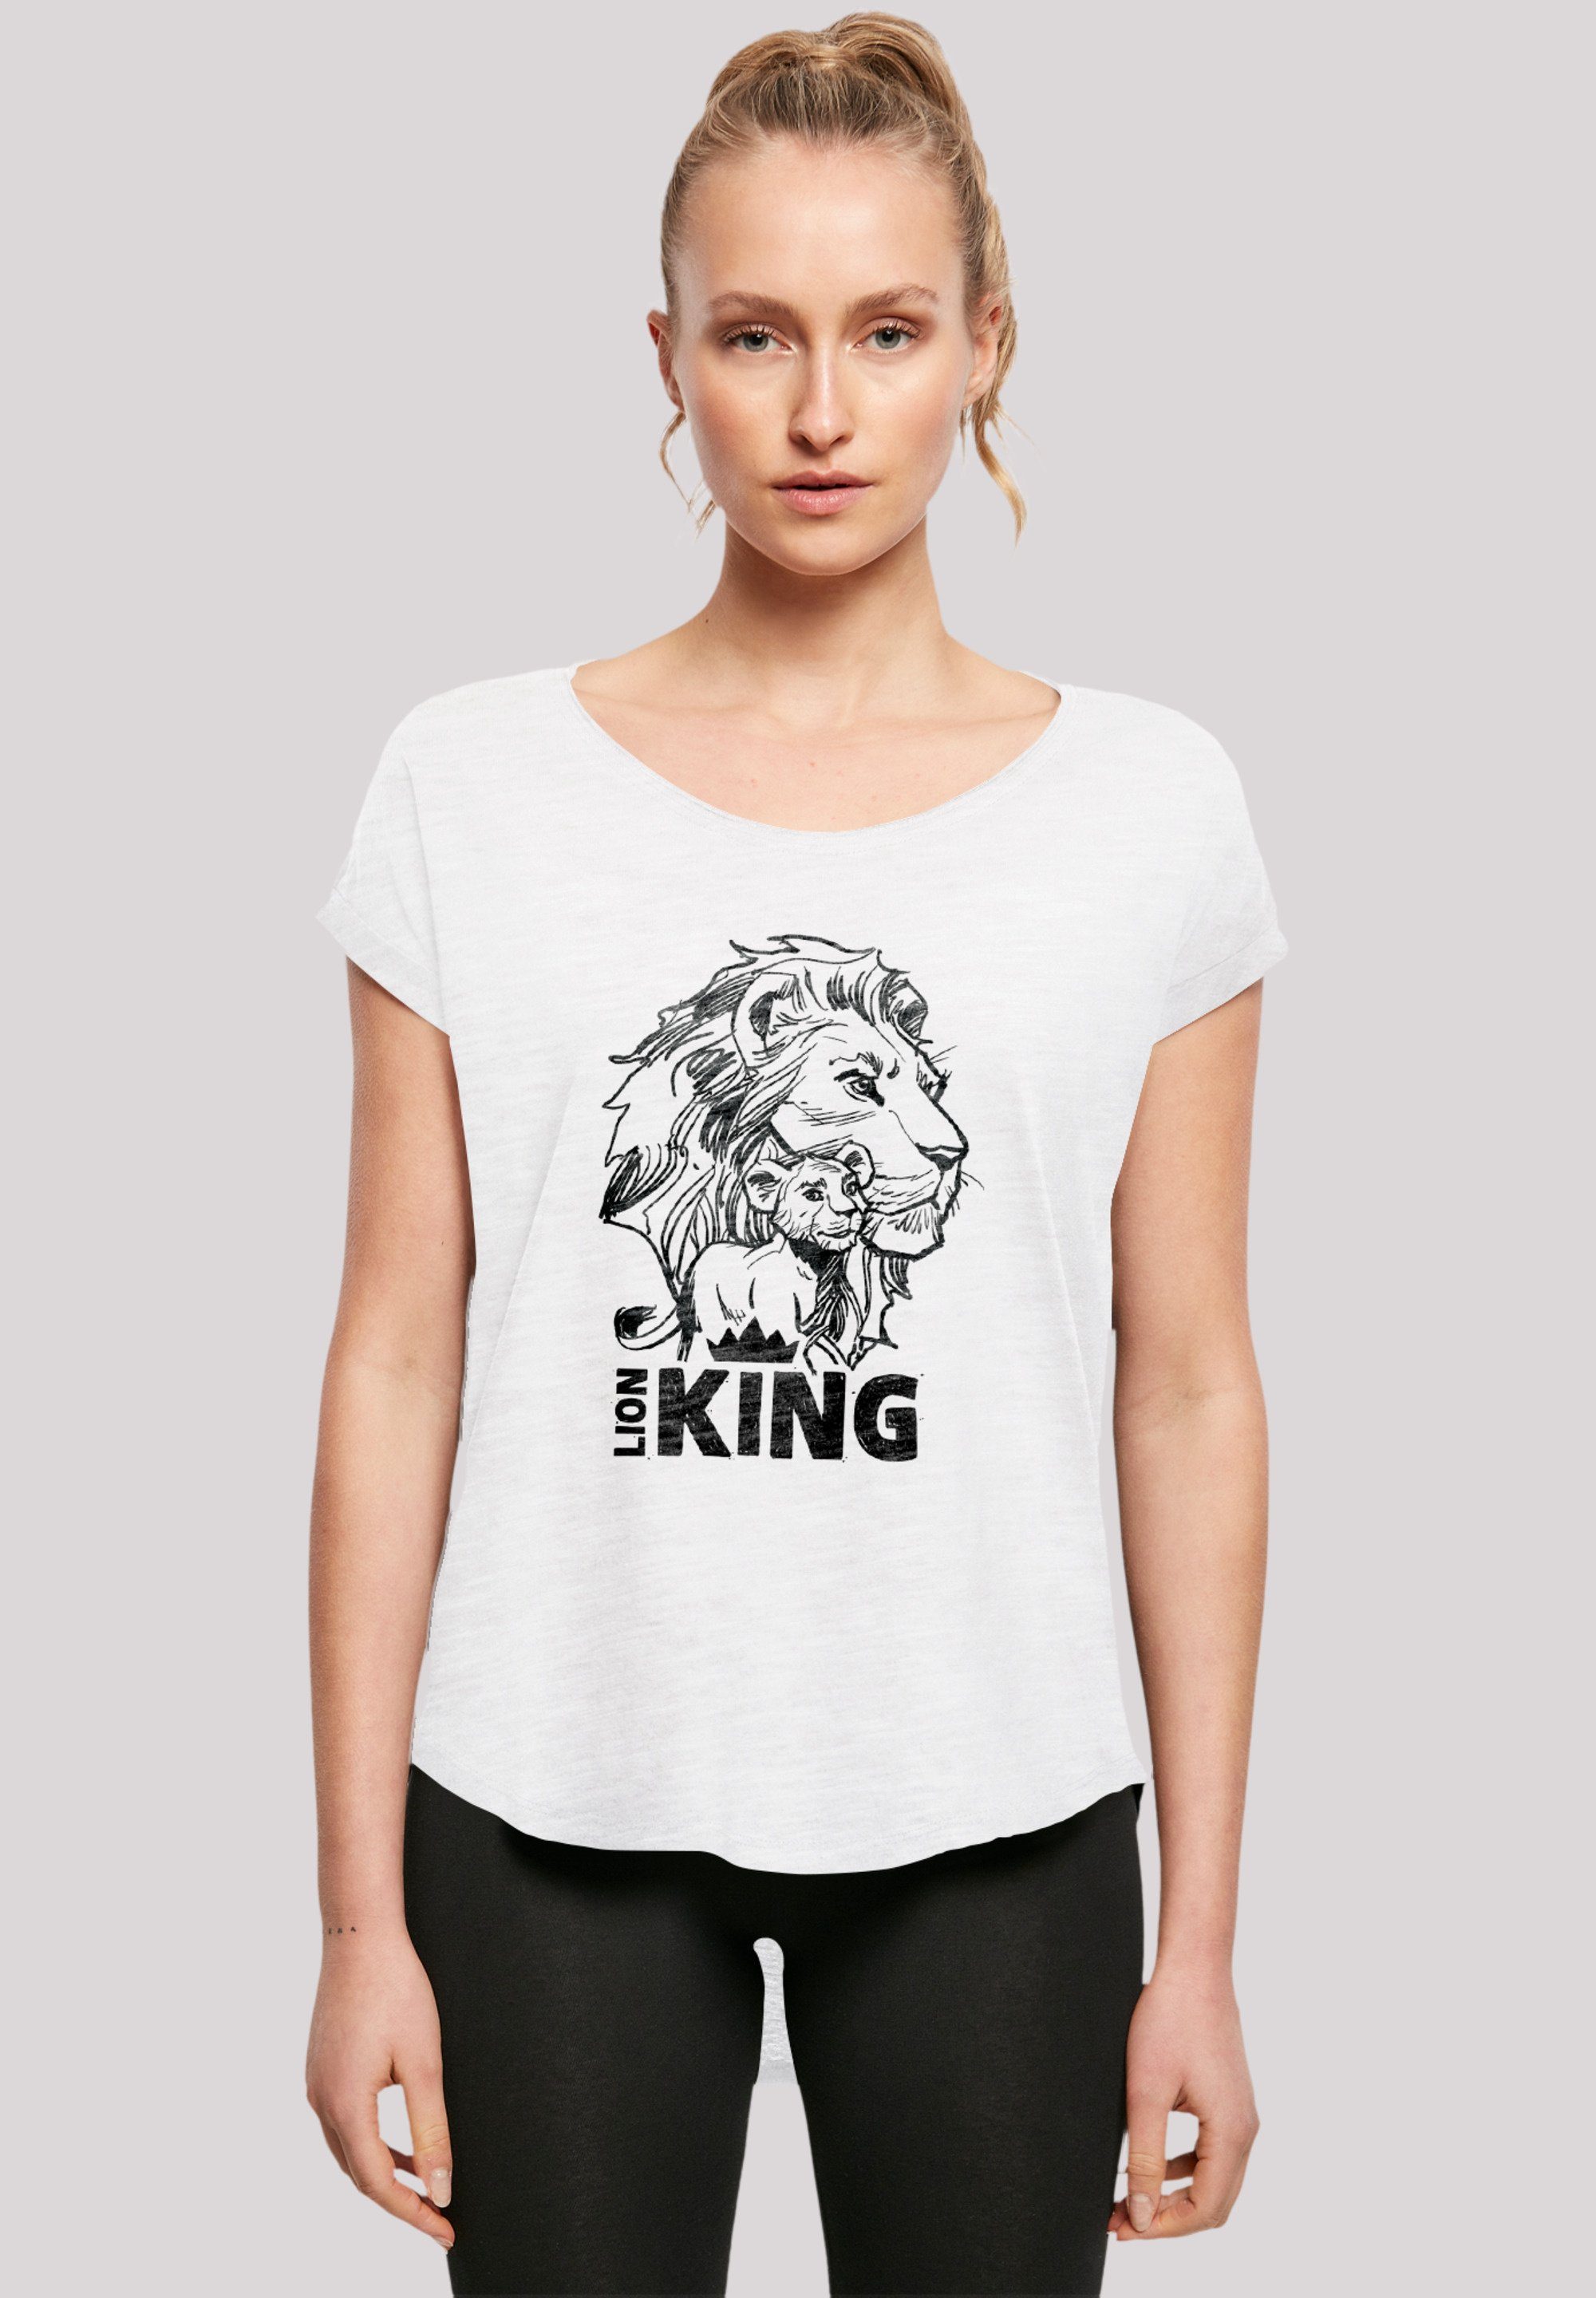 Qualität, Tragekomfort Disney Premium mit Sehr Together T-Shirt weicher F4NT4STIC white König Baumwollstoff der Löwen hohem